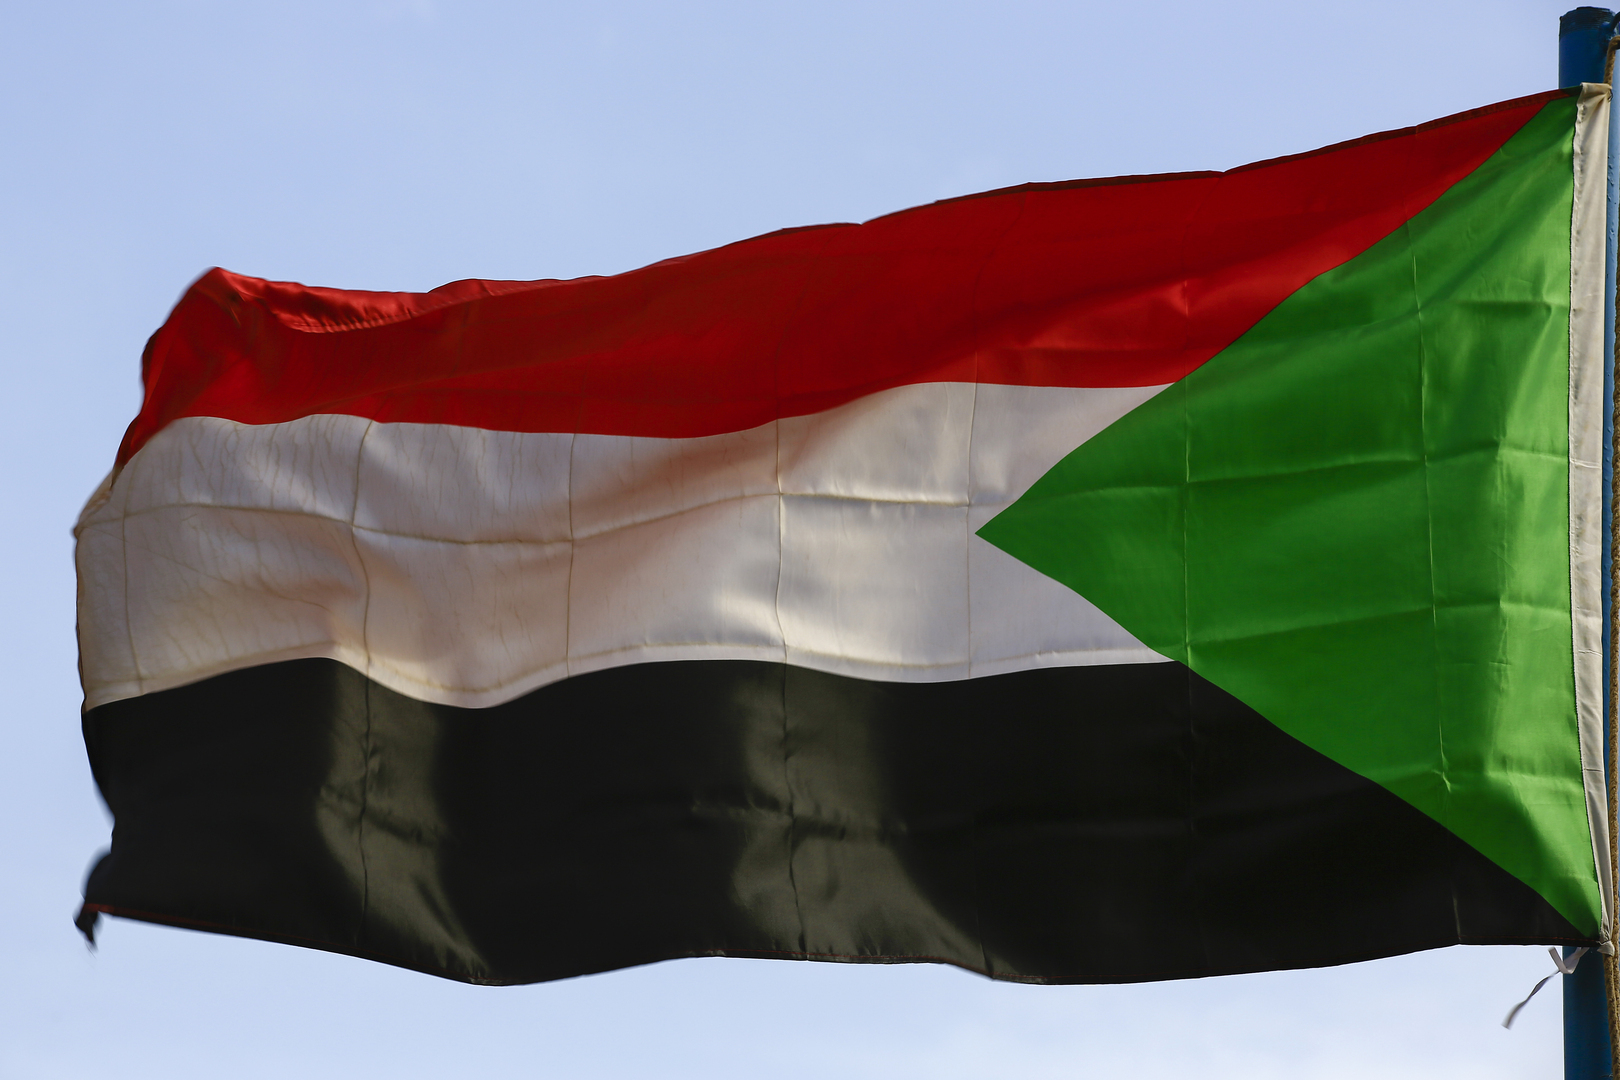 السودان.. تسريب وثيقة سياسية من المتوقع توقيعها اليوم لإنهاء الأزمة